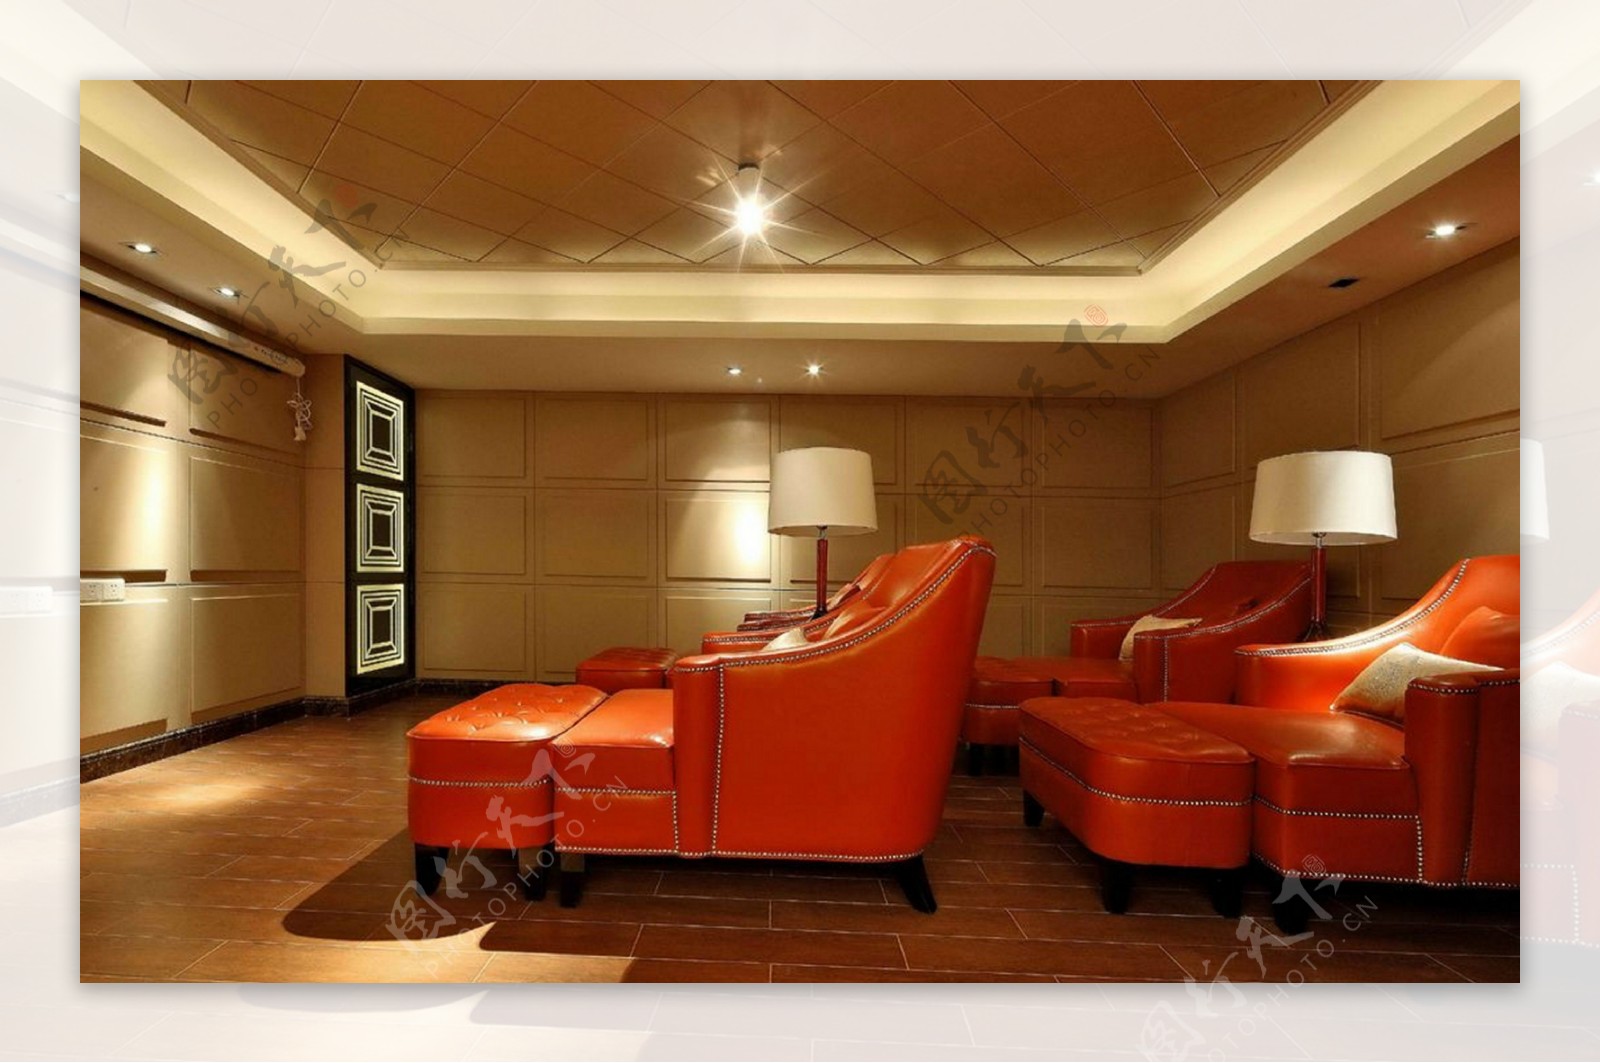 欧式大厅沙发设计图